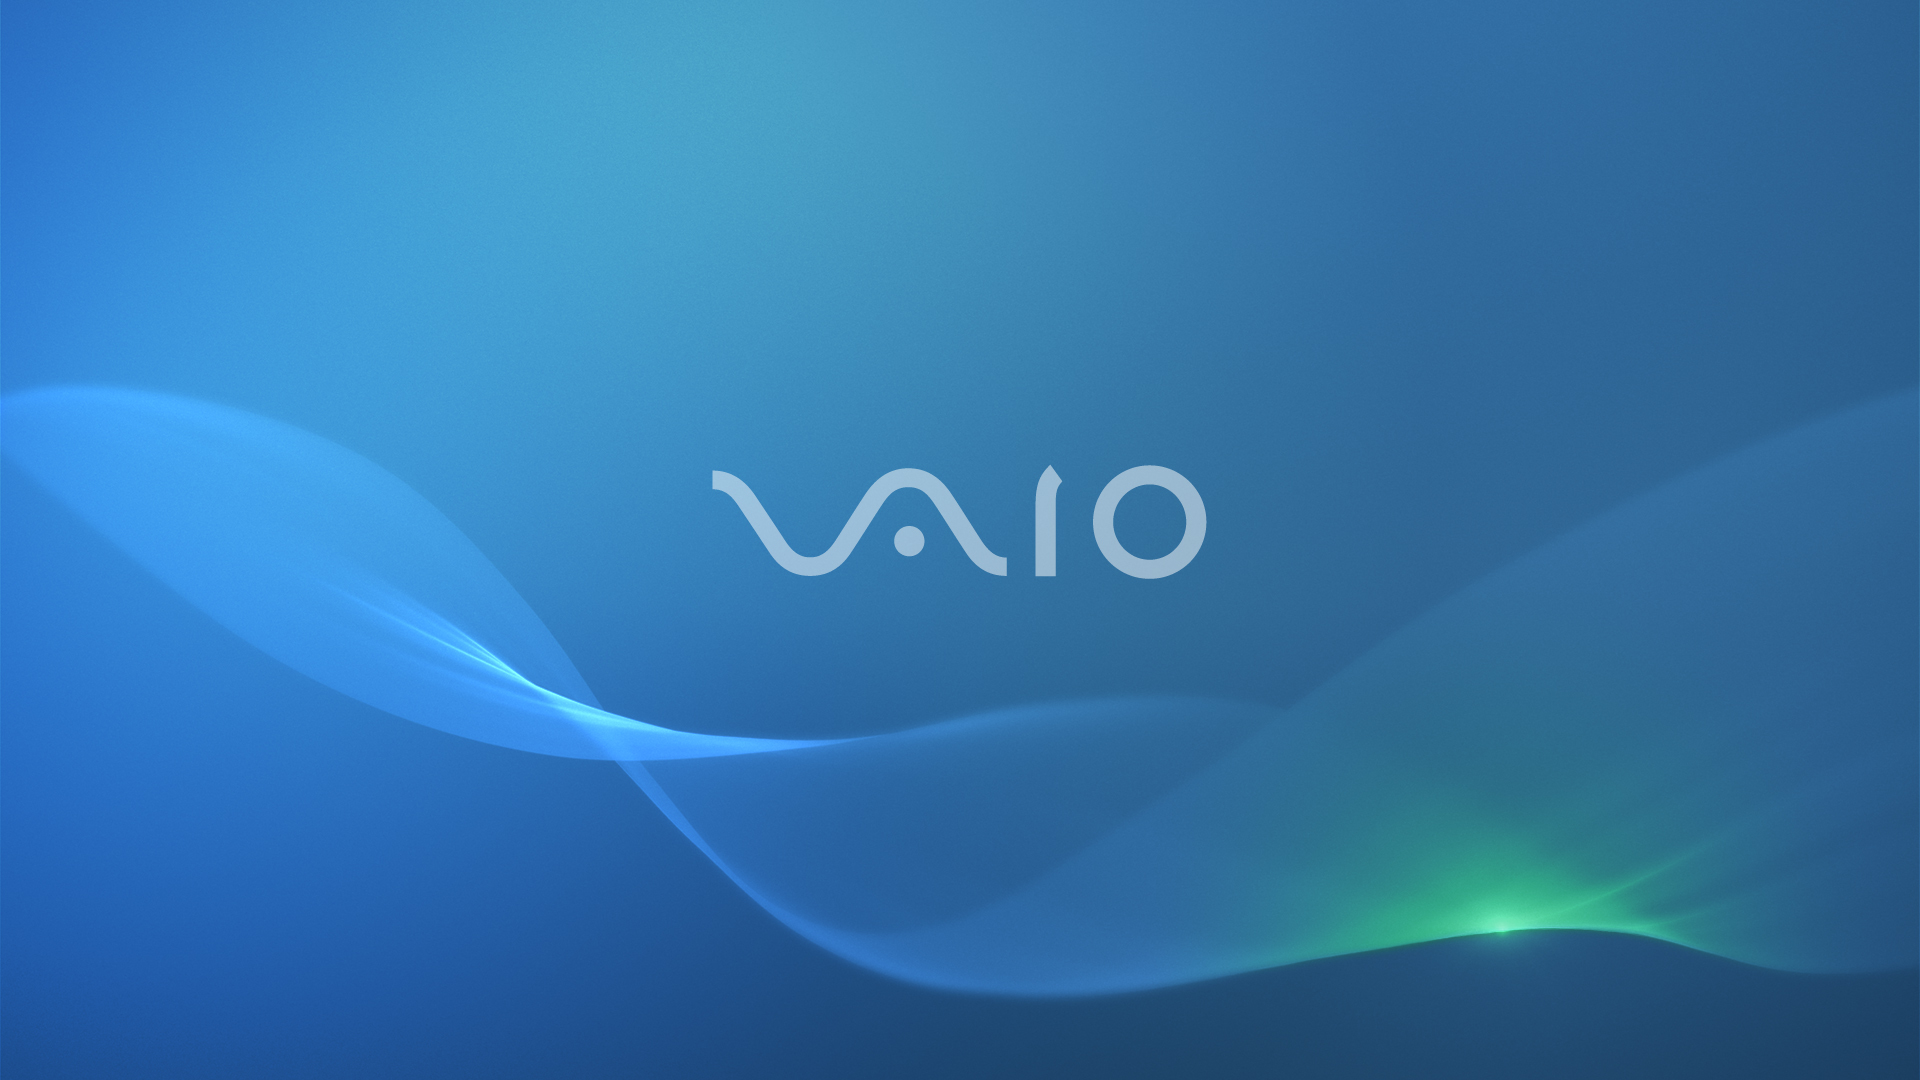 Обои xperia. Sony VAIO 2014. Сони Вайо логотип. Sony VAIO desktop.